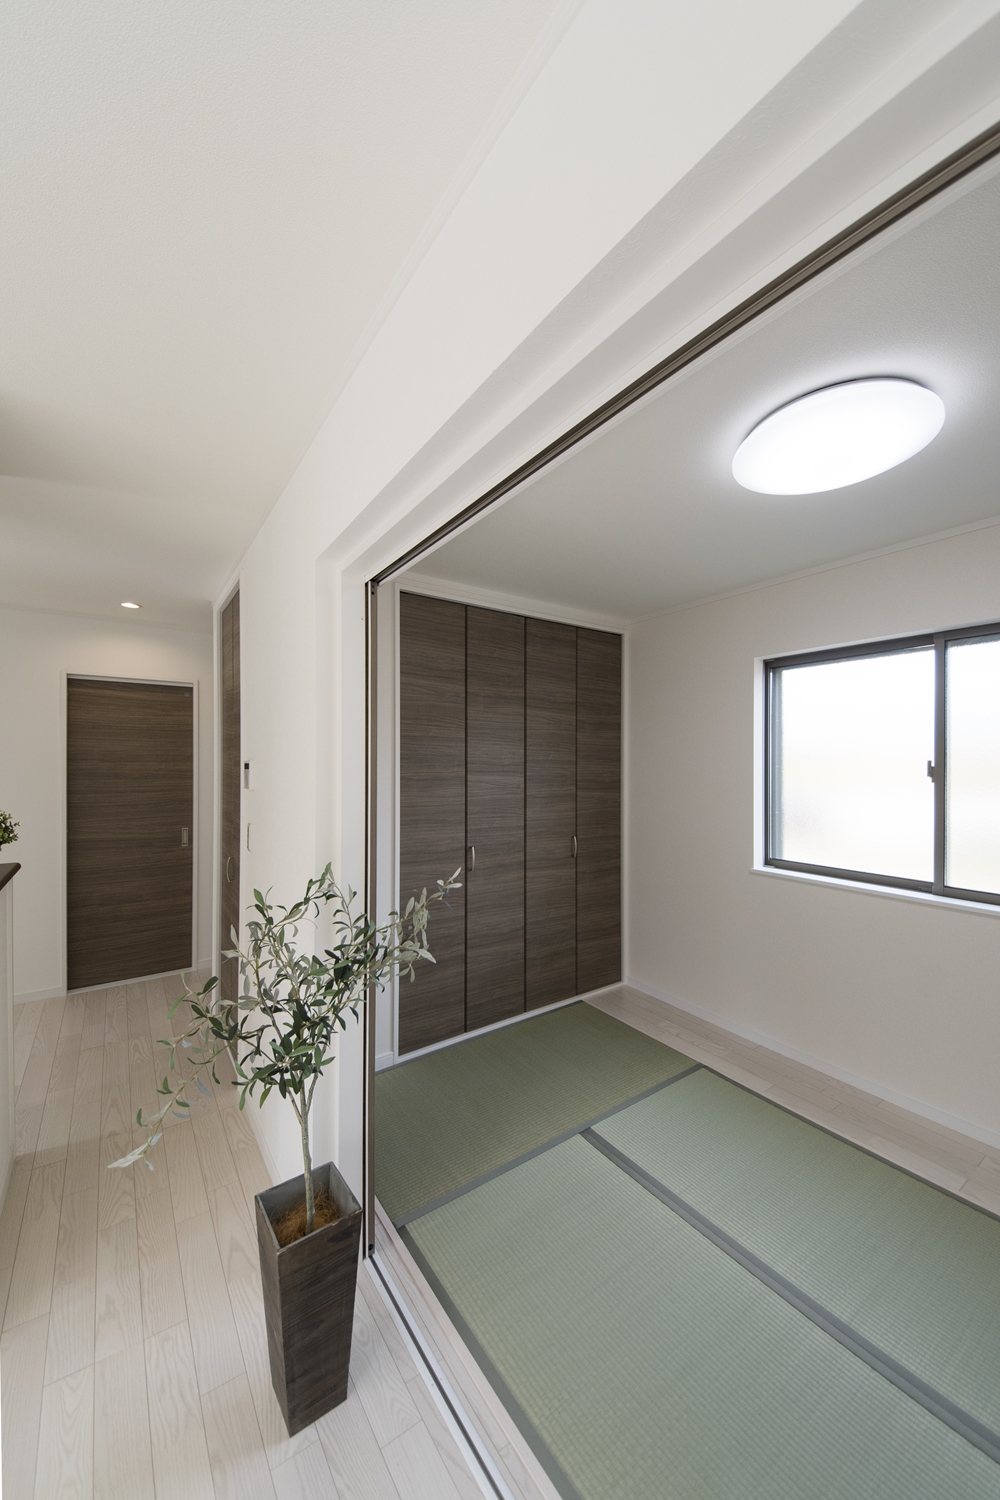 畳のさわやかなグリーンが空間を彩る1階畳敷き洋室。